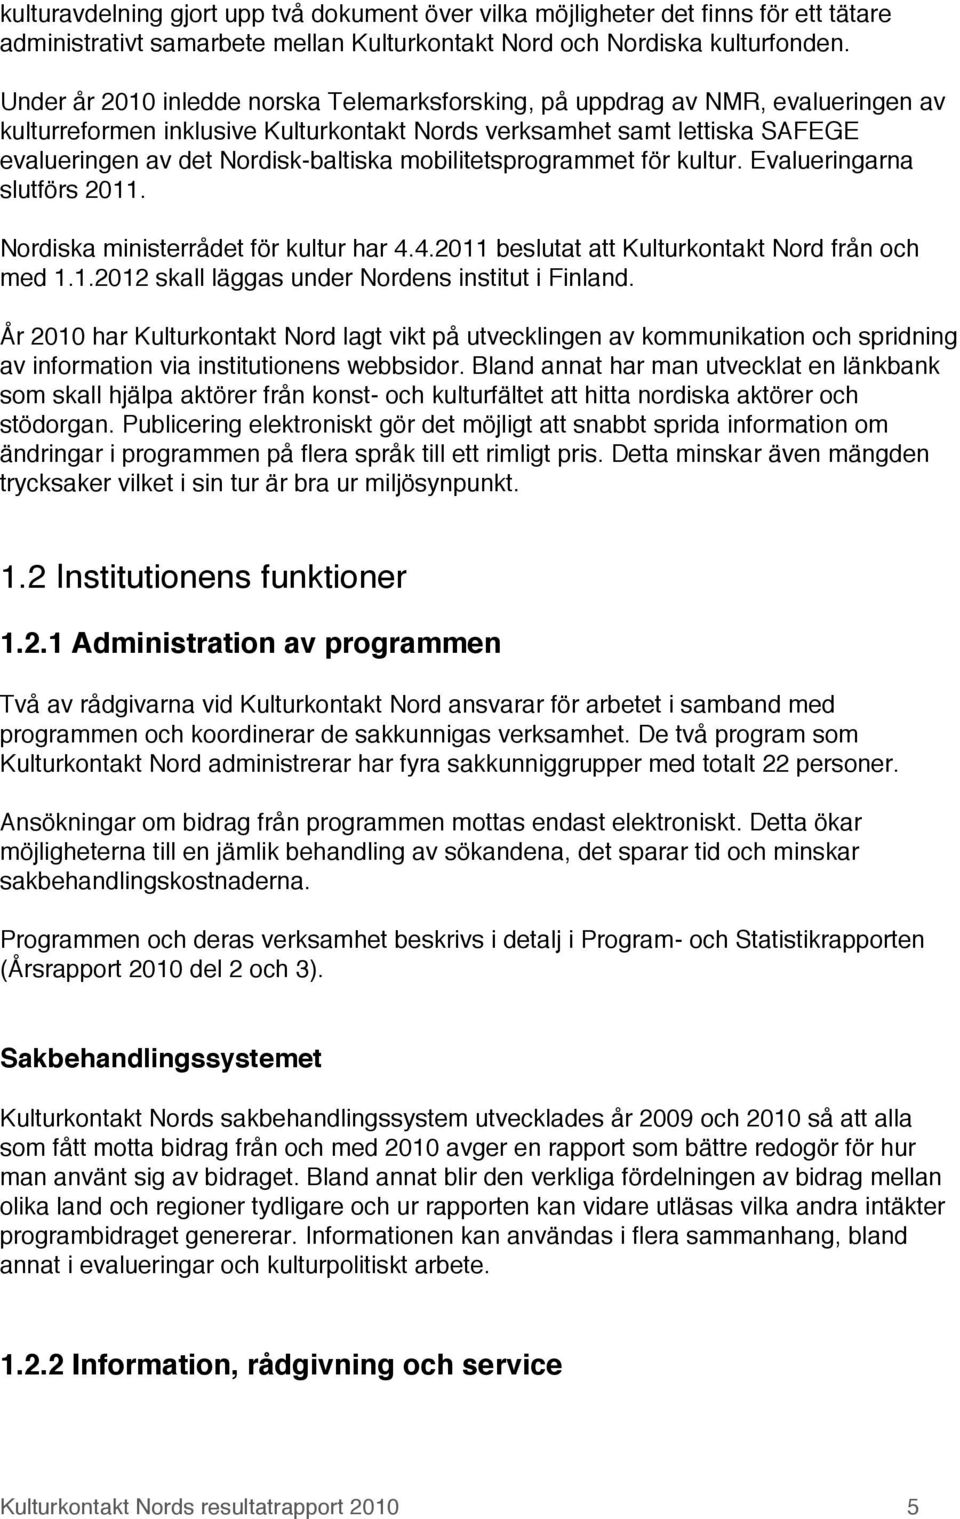 mobilitetsprogrammet för kultur. Evalueringarna slutförs 2011. Nordiska ministerrådet för kultur har 4.4.2011 beslutat att Kulturkontakt Nord från och med 1.1.2012 skall läggas under Nordens institut i Finland.